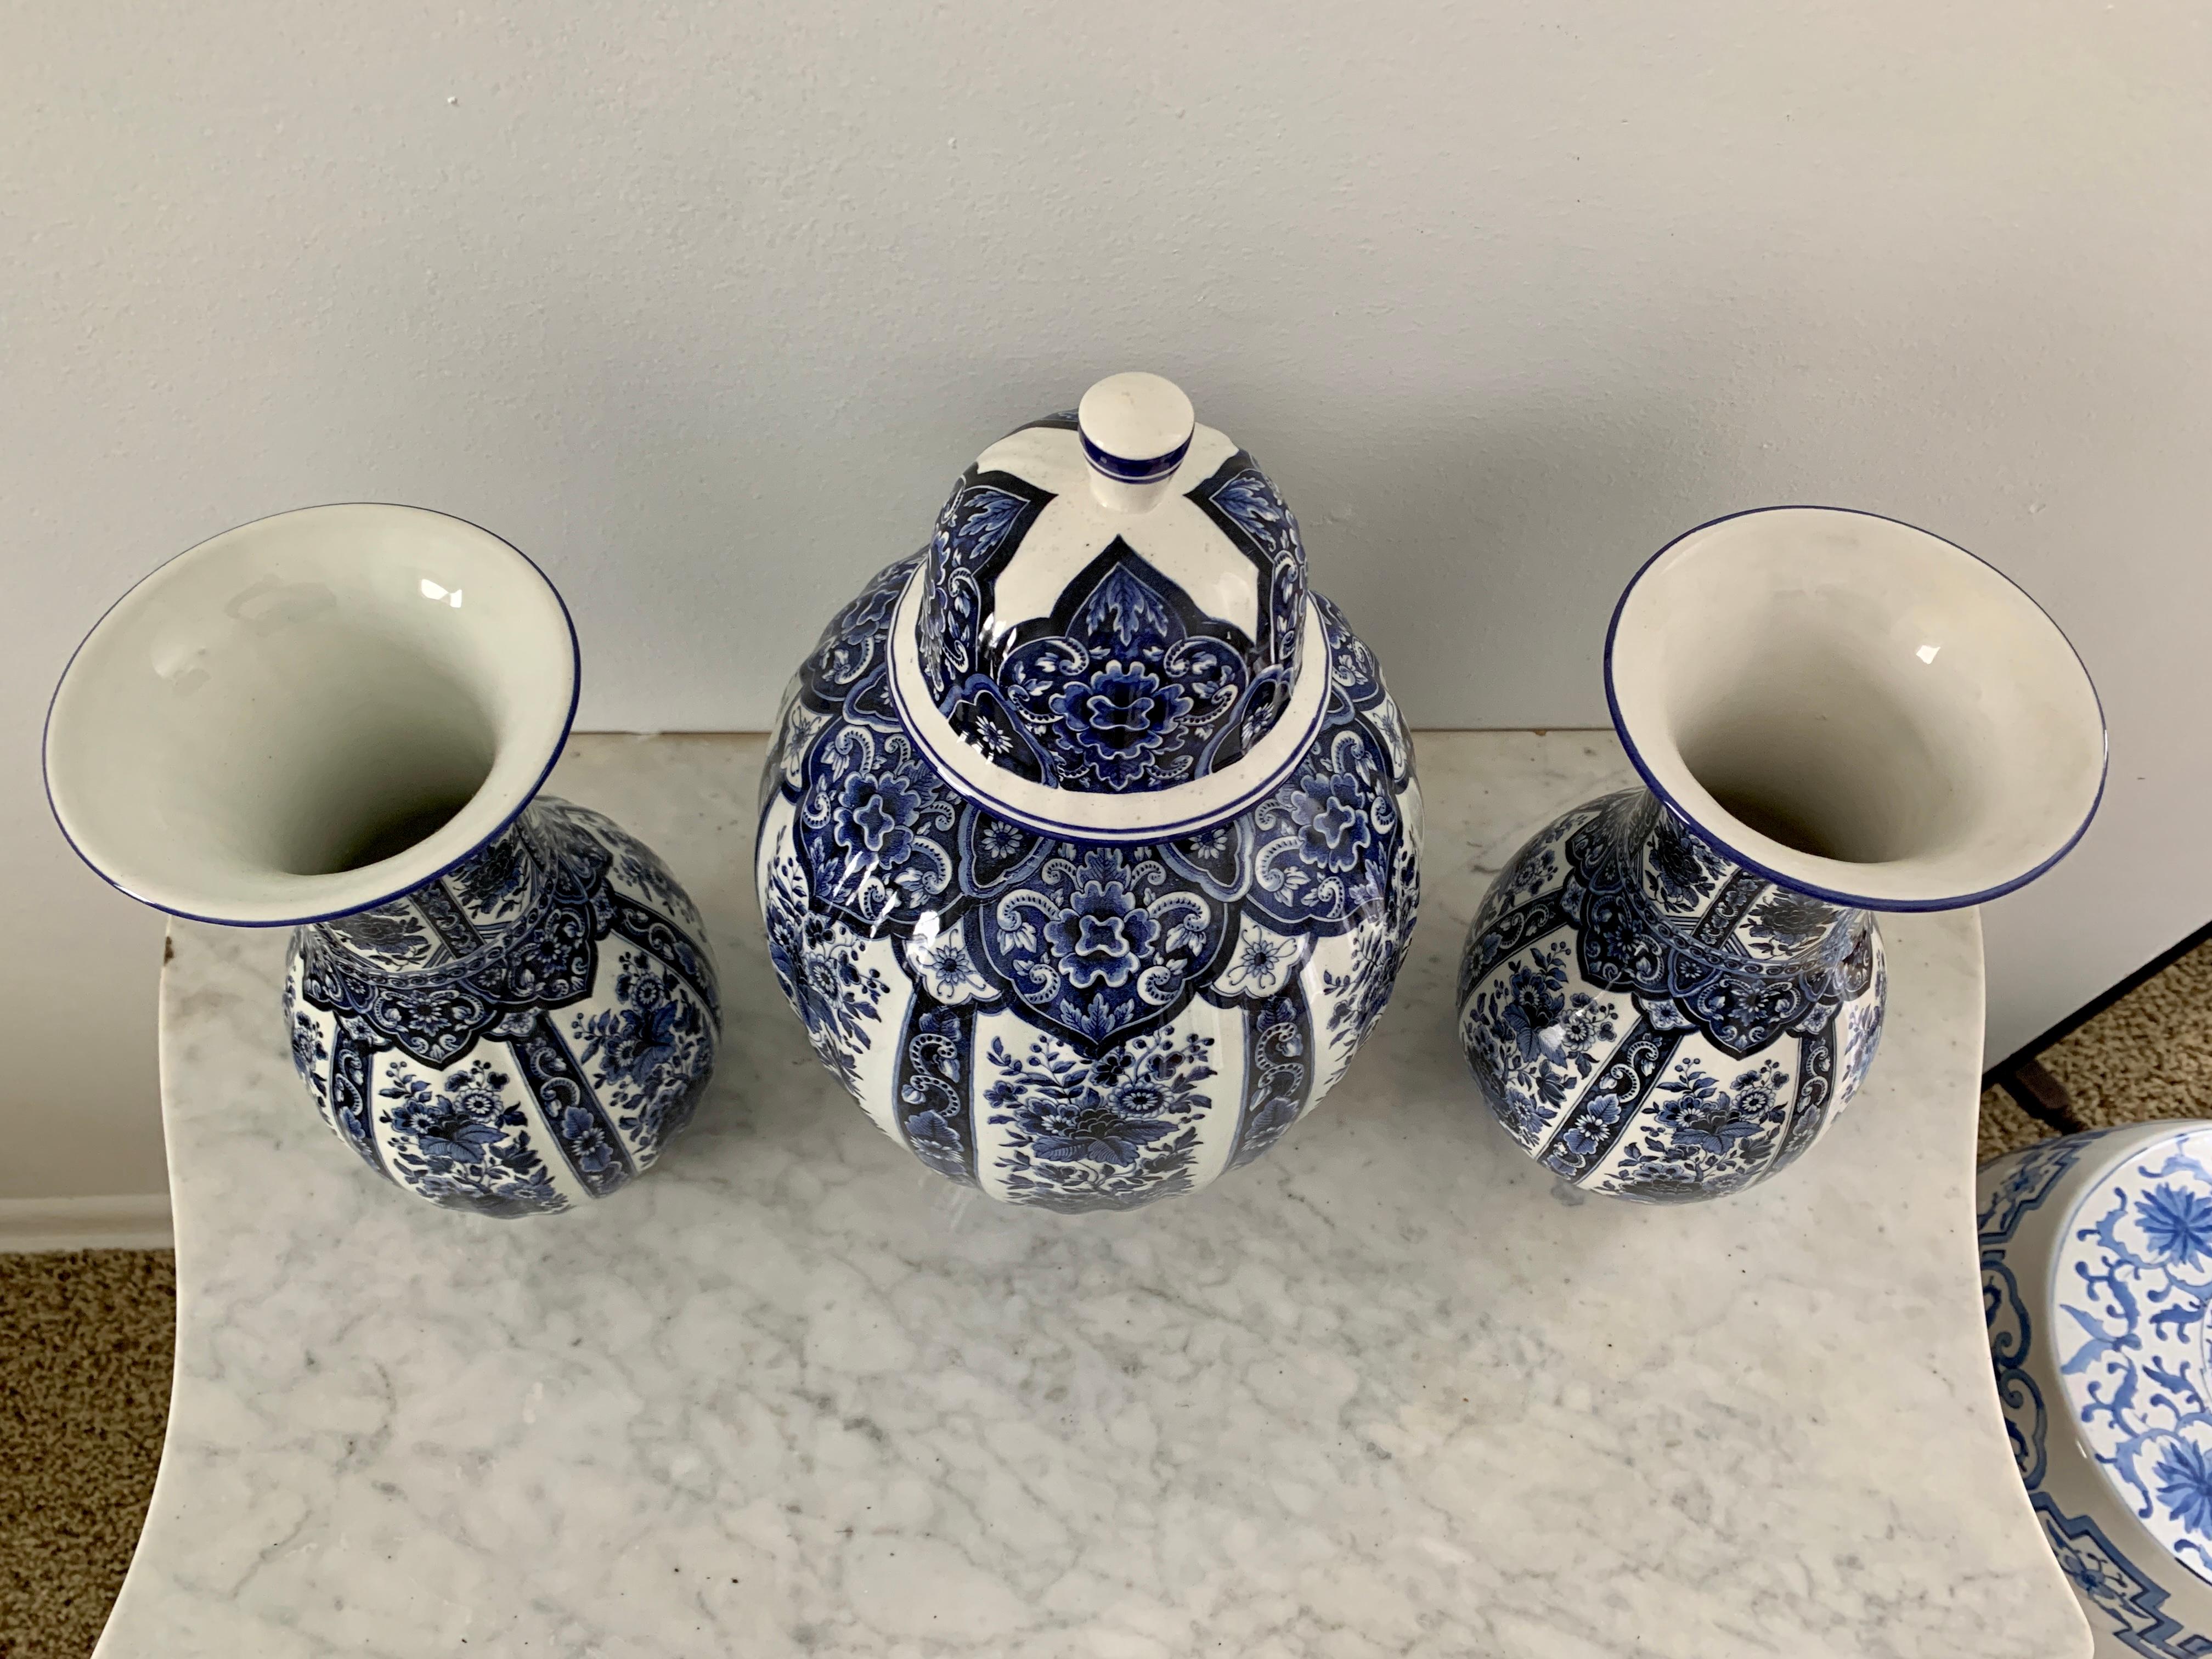 Ein wunderschönes Set aus blauem und weißem Porzellan im Stil der italienischen Chinoiserie oder Delft, darunter zwei Vasen und ein überdachter Krug. Eine sofortige Collection'S! 

Von Ardalt Blue Delfia

Italien, Mitte des 20. Jahrhunderts

Vasen